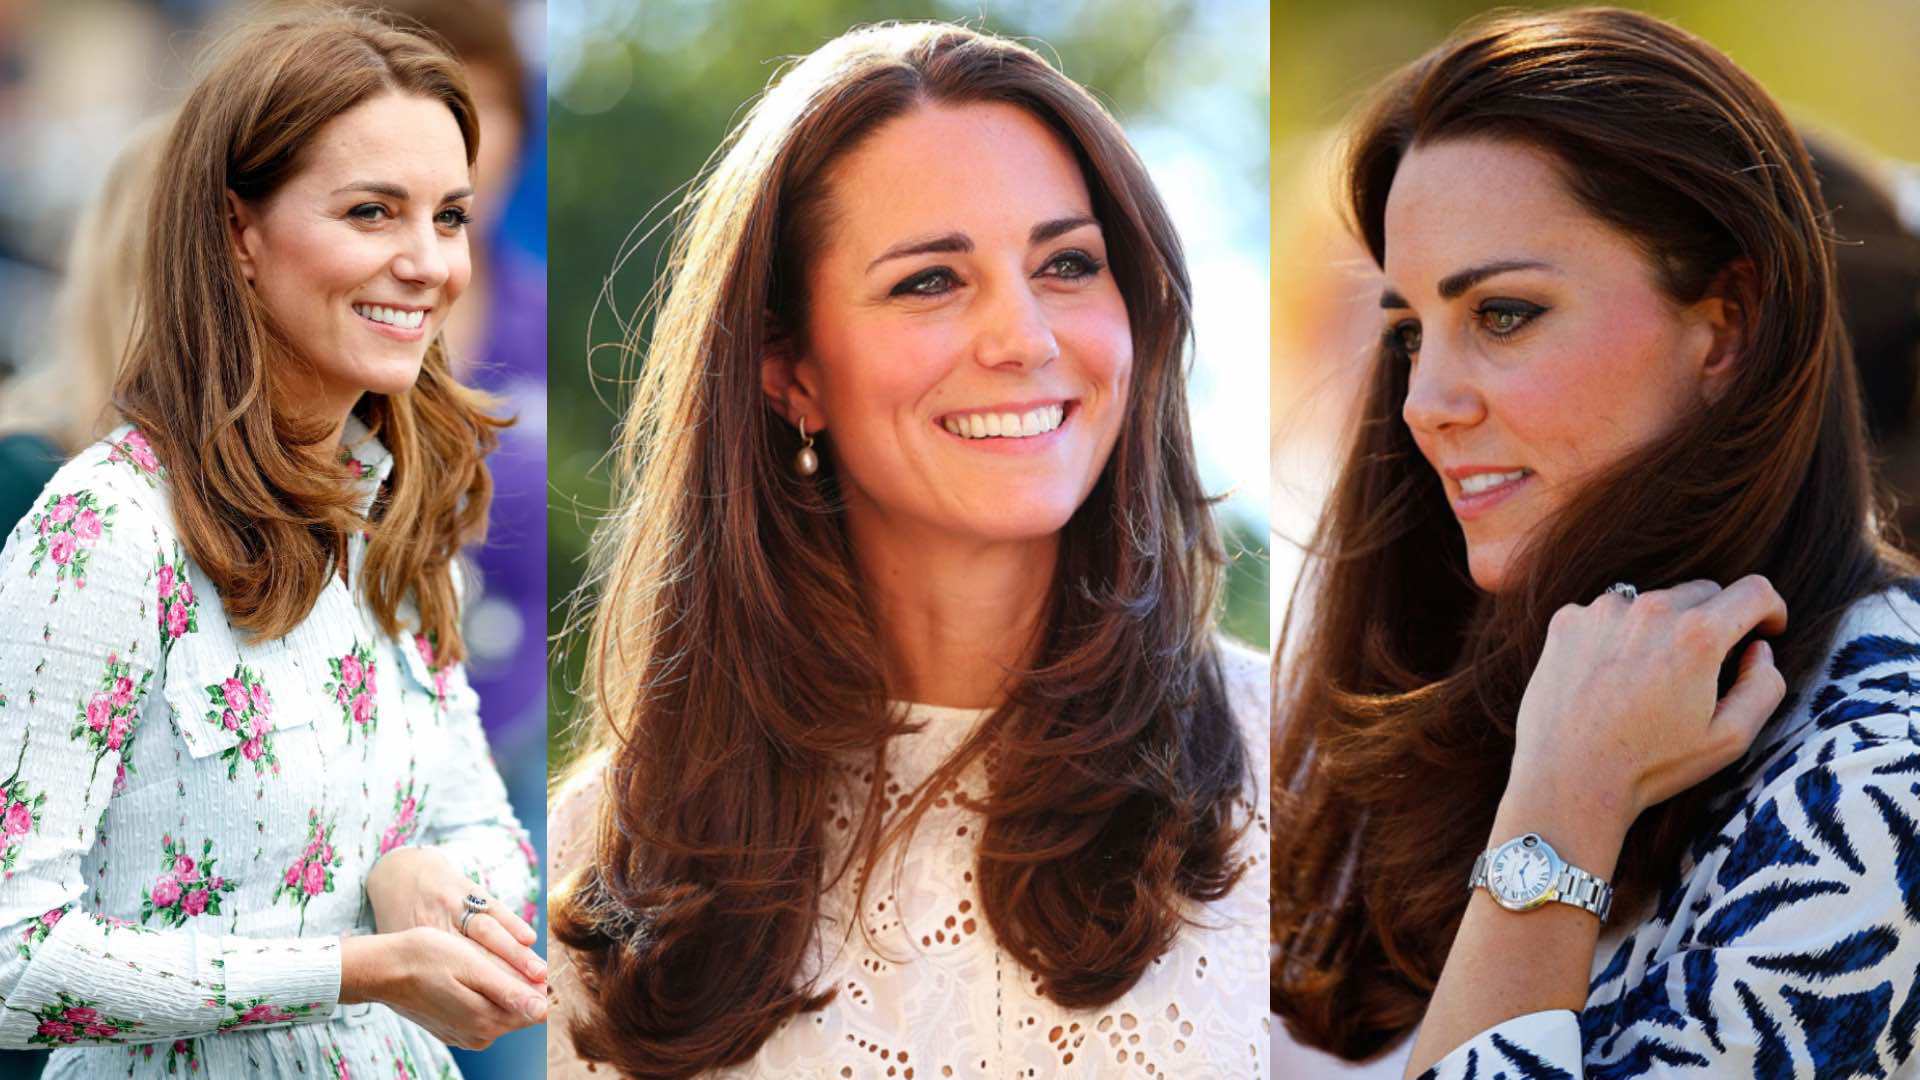 Công nương Kate luôn thay đổi đủ kiểu tóc đẹp, nhưng cô út chỉ có một - 5 kiểu